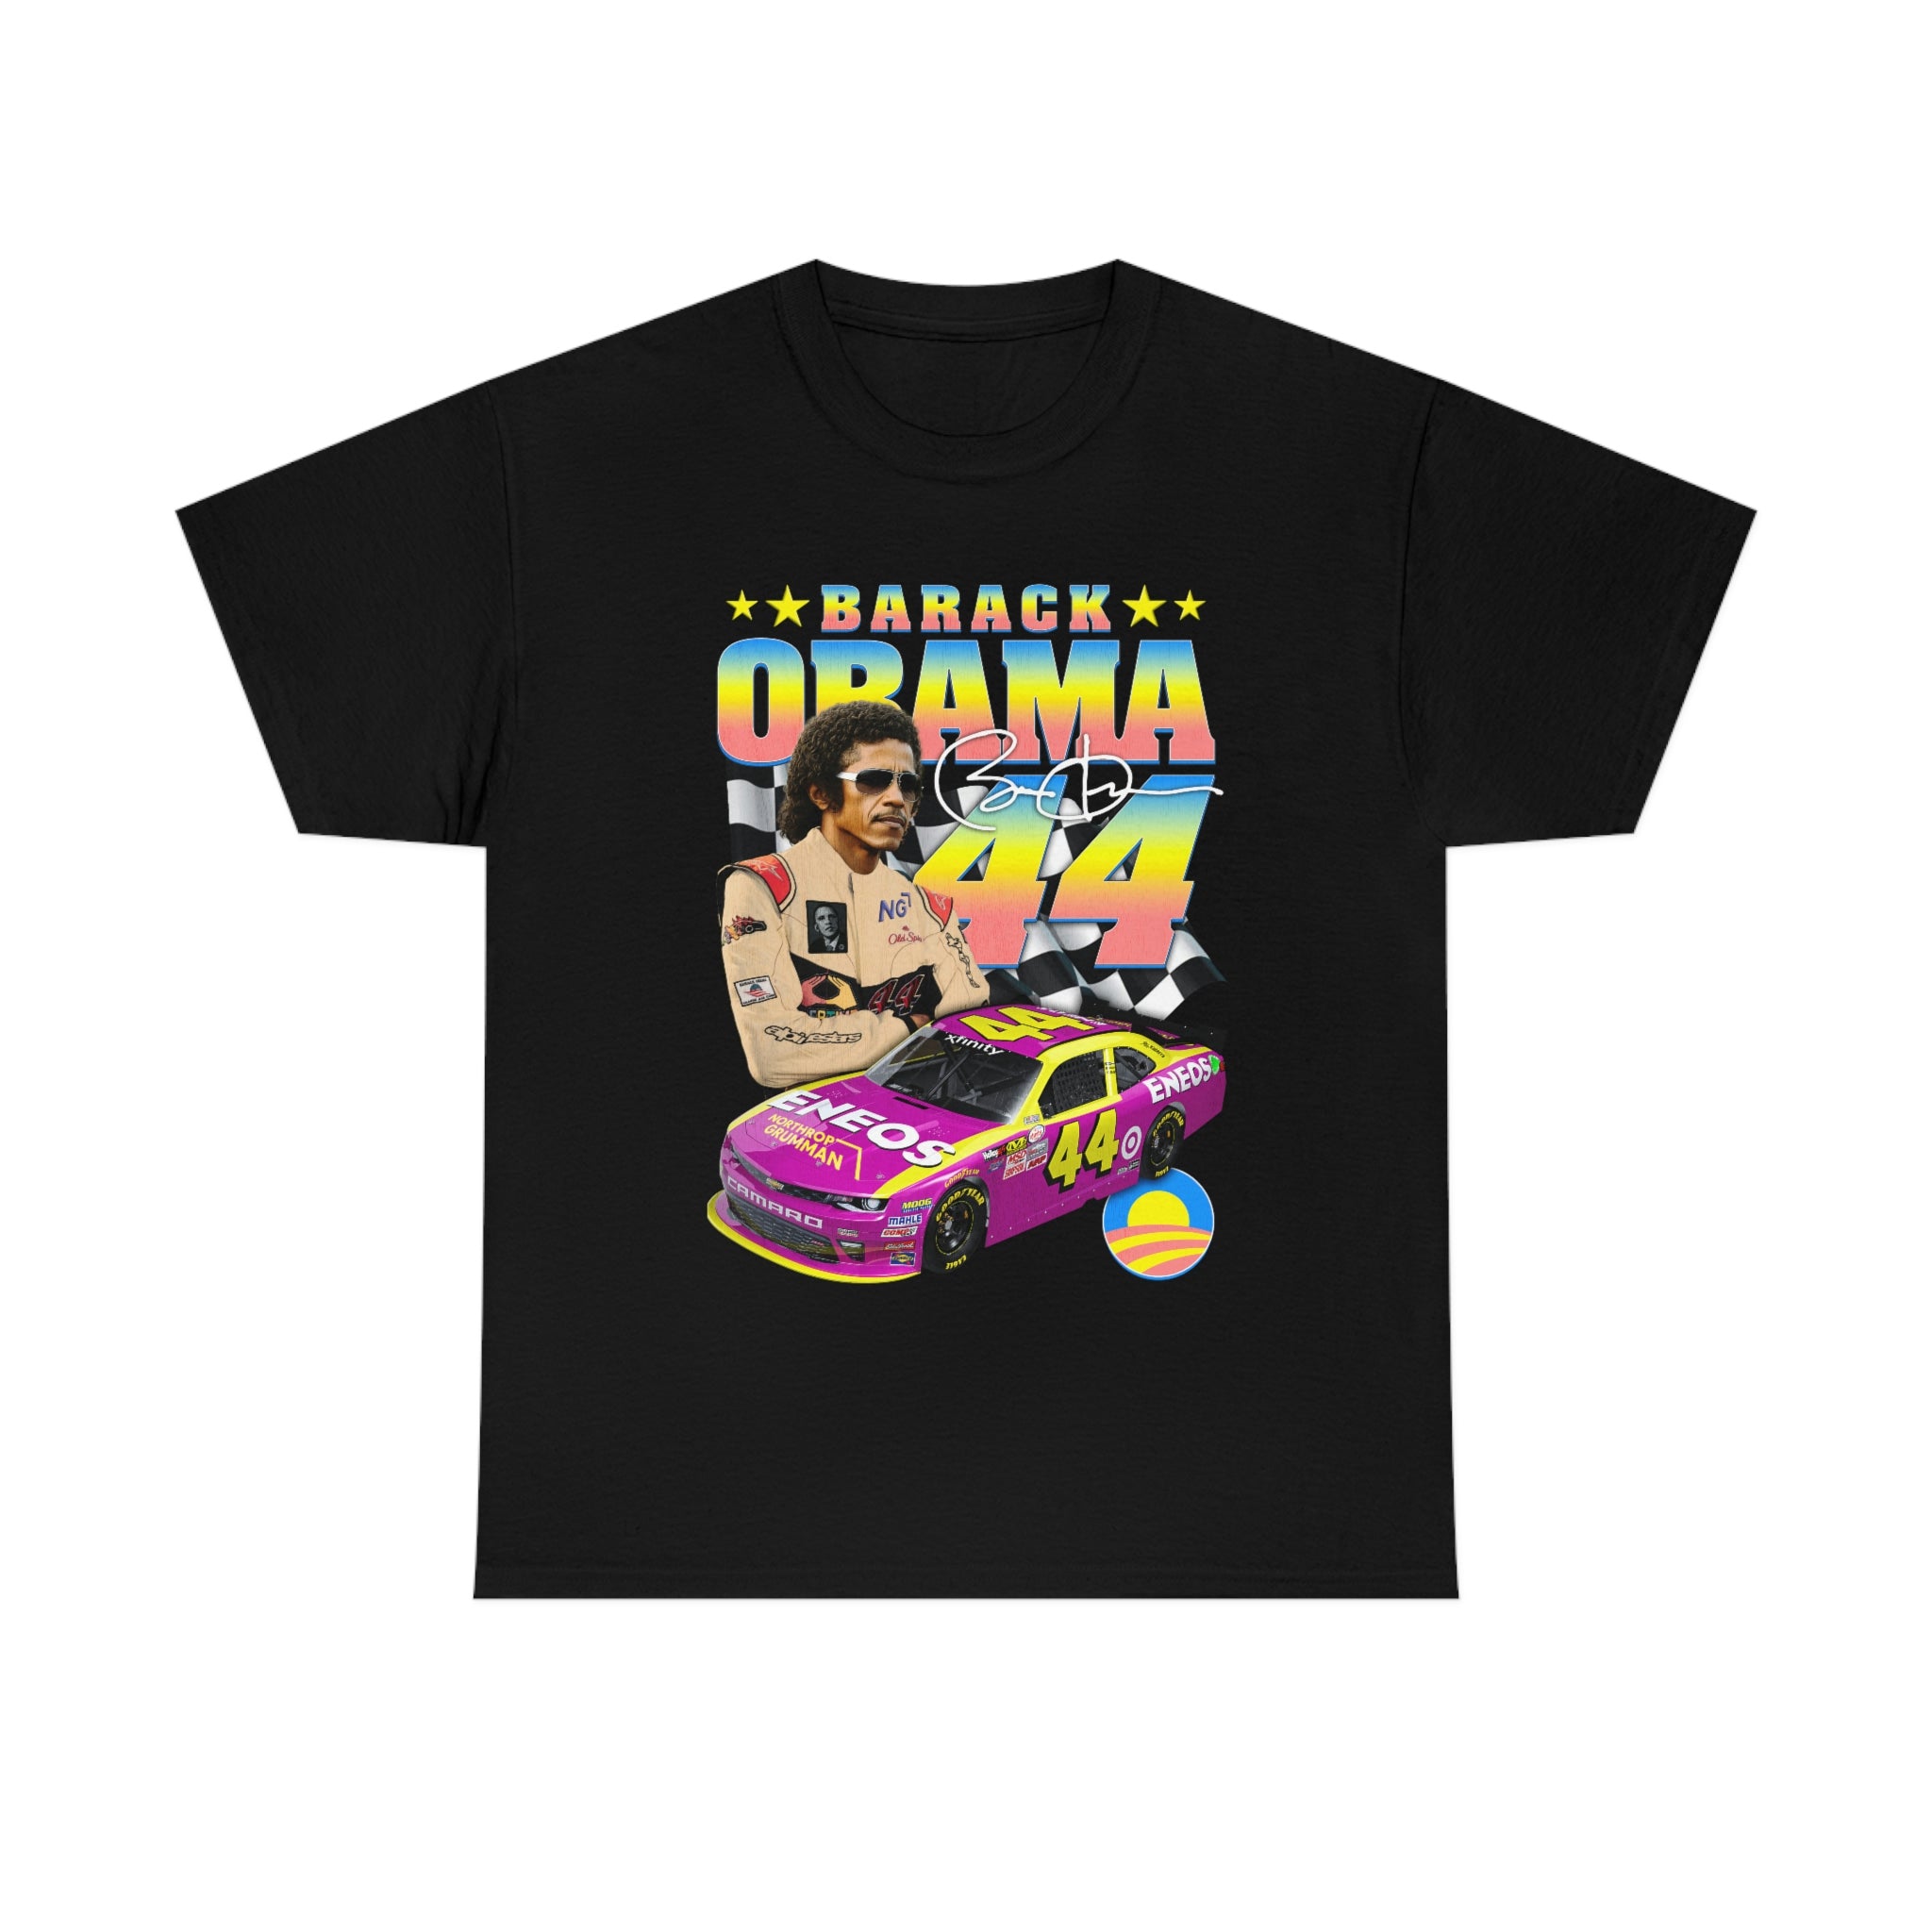 Barack Obama #44. – Shirts That Go Hard